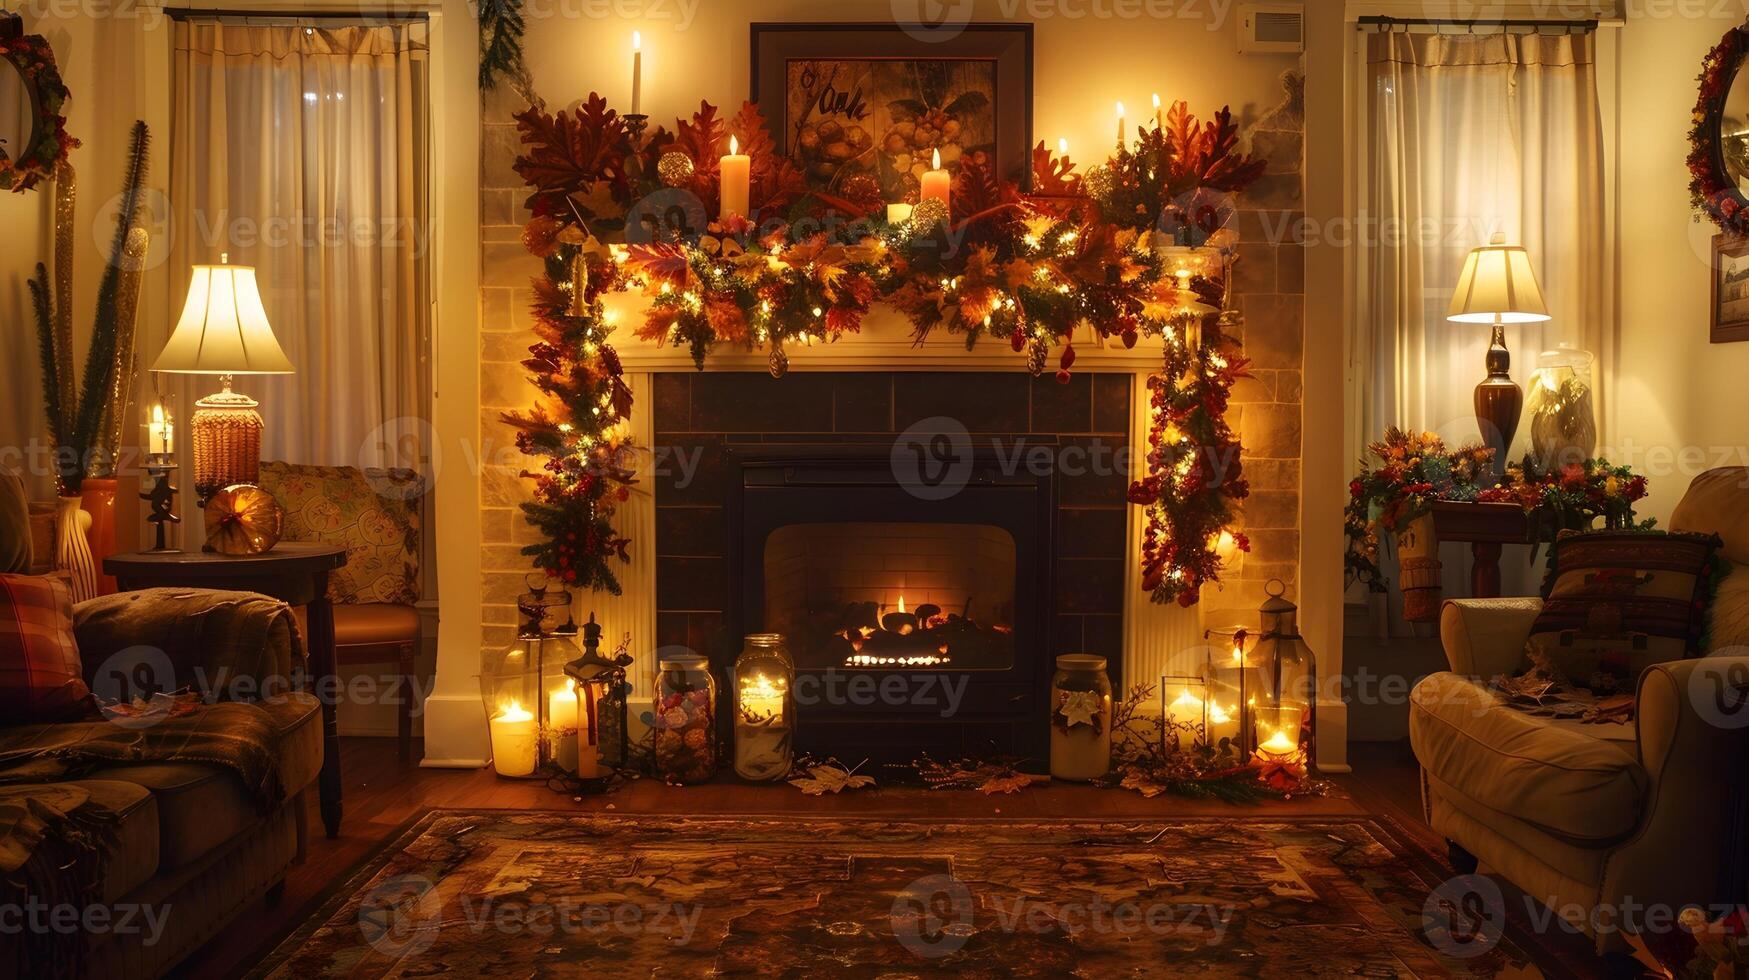 acolhedor e festivo Natal lareira cena com caloroso iluminação, guirlandas, e velas dentro uma convidativo casa interior foto